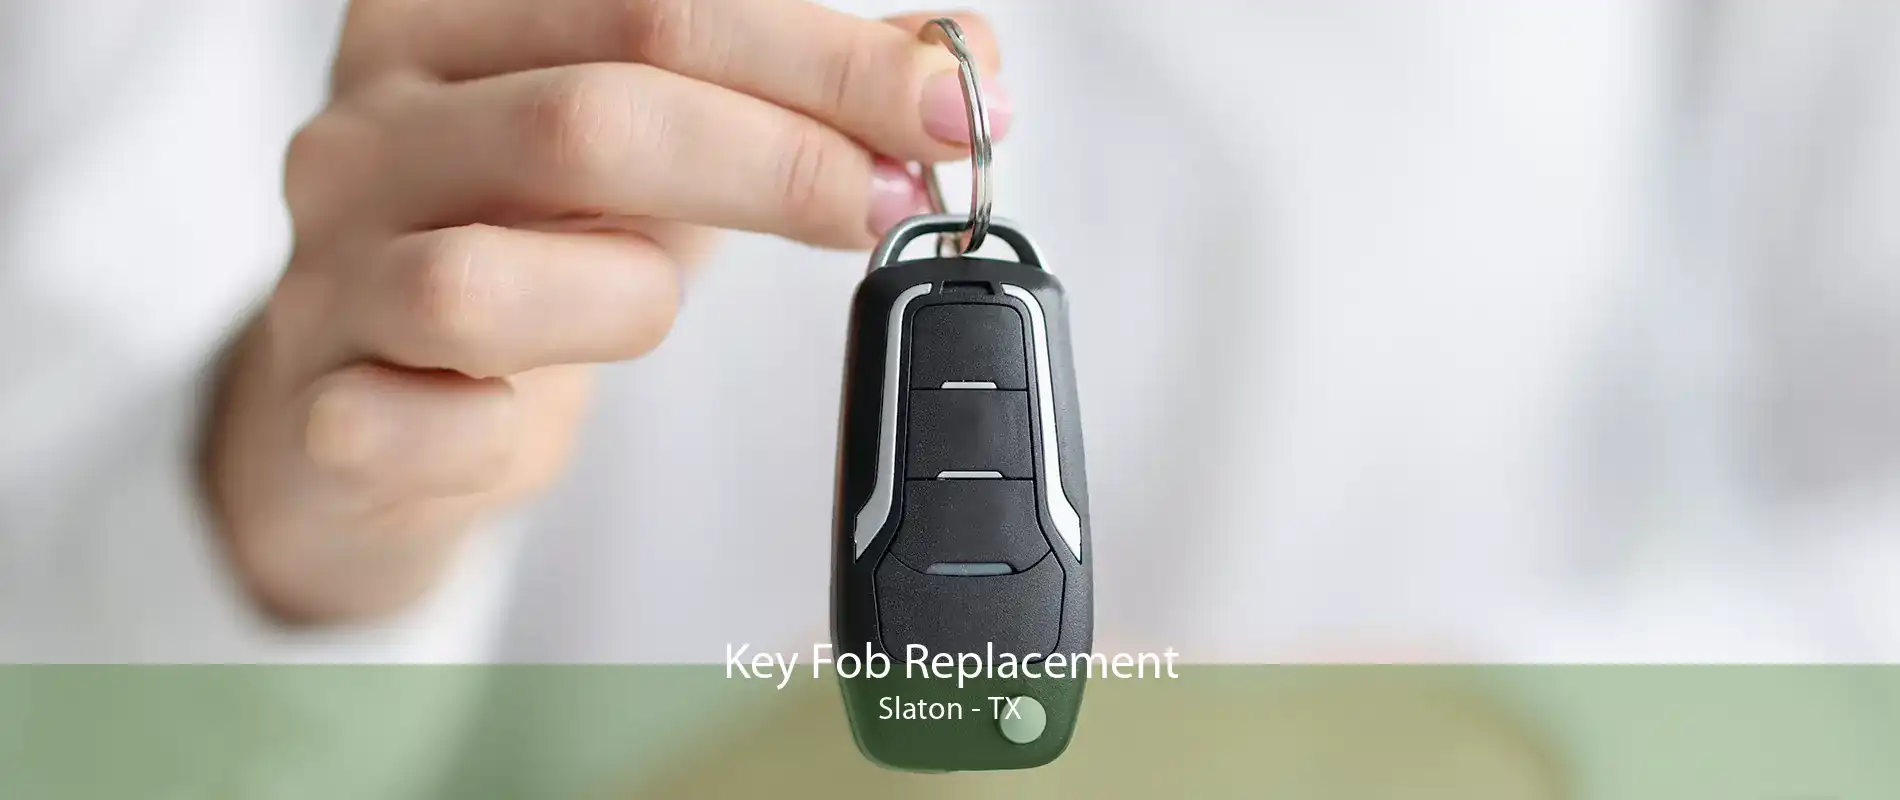 Key Fob Replacement Slaton - TX